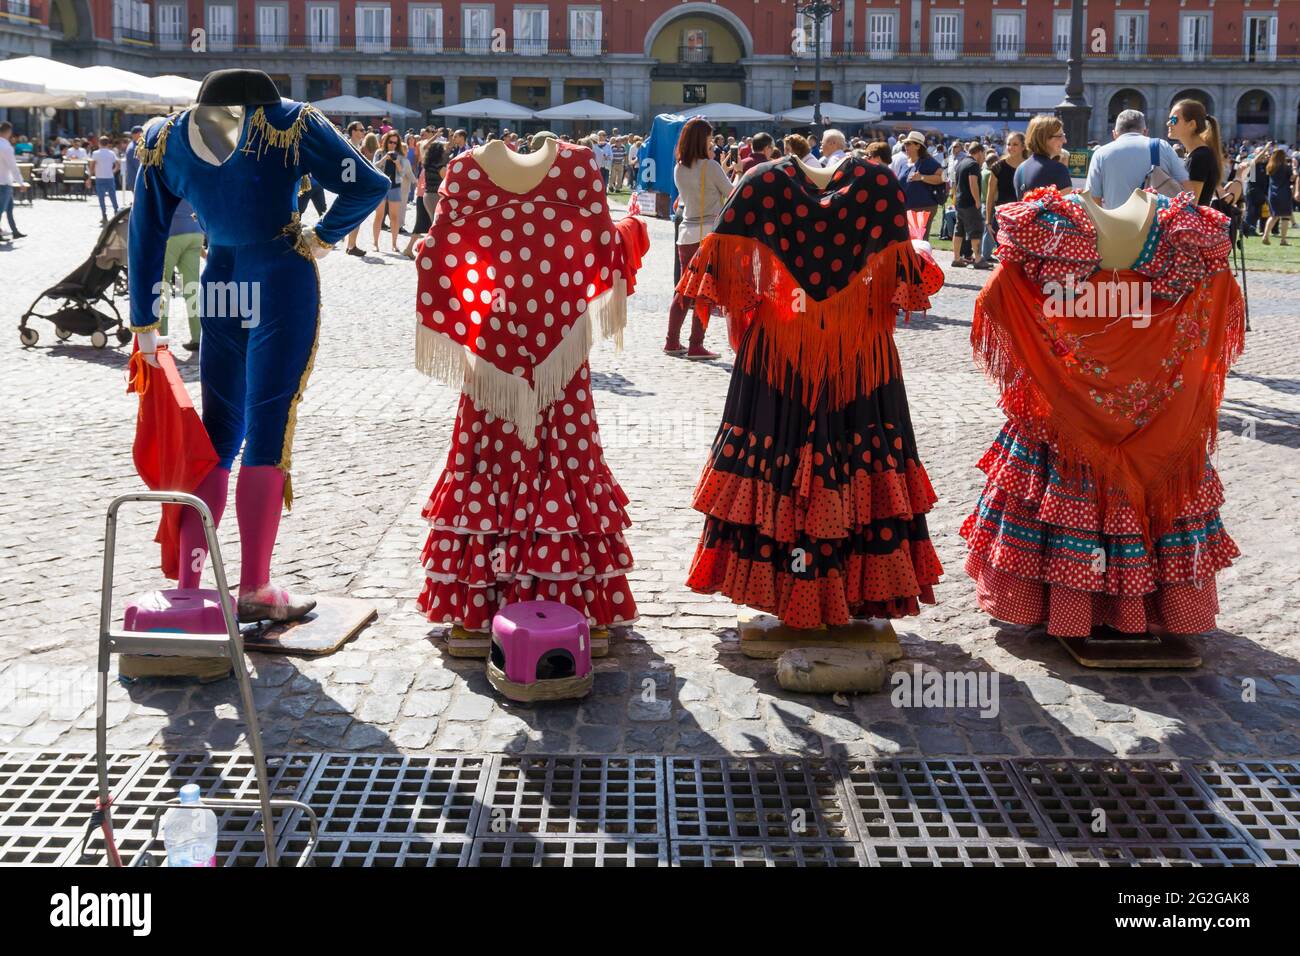 Manichini senza testa per foto turistiche. Plaza Mayor - Piazza principale. Madrid, Comunidad de madrid, Spagna, Europa Foto Stock